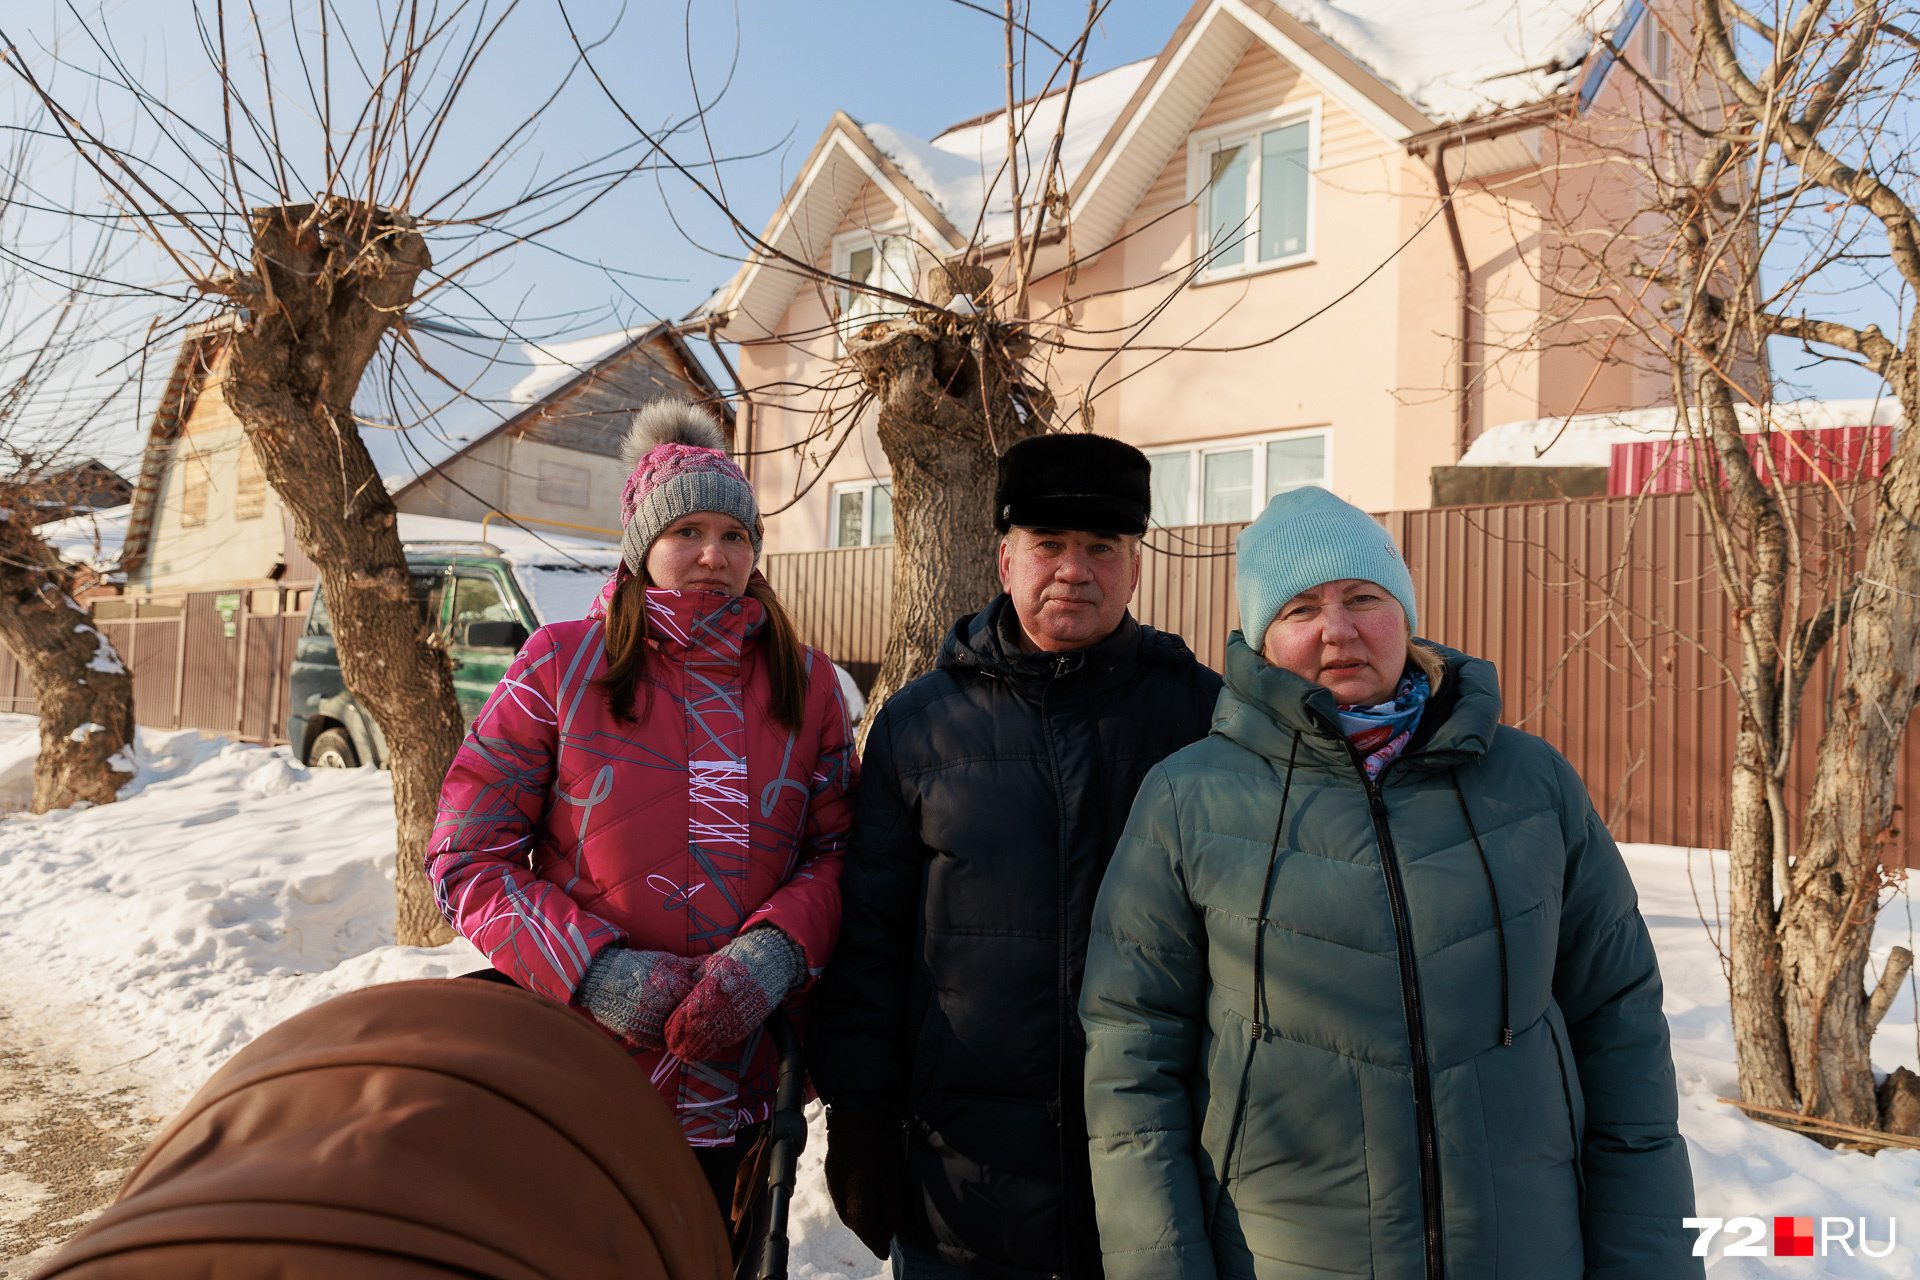 Бывший военный Иван Елисеев и его семья строили дом более 10 лет. Теперь не знают, что будет с результатом их трудов